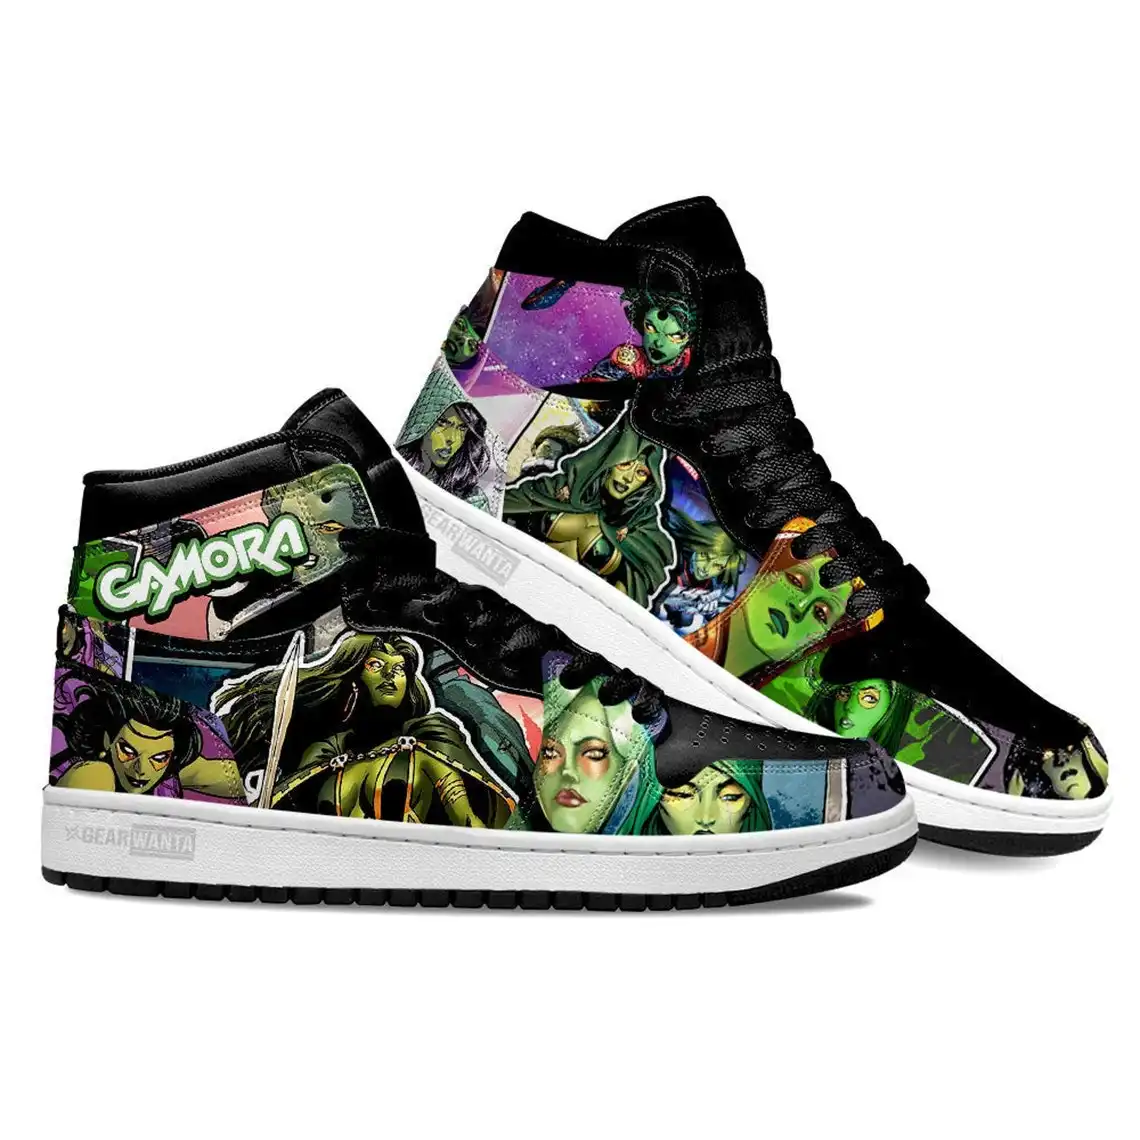 Avenger Gamora Super Heroes For Movie Fans - Custom Anime Sneaker For Men And Women Air Jordan Shoes